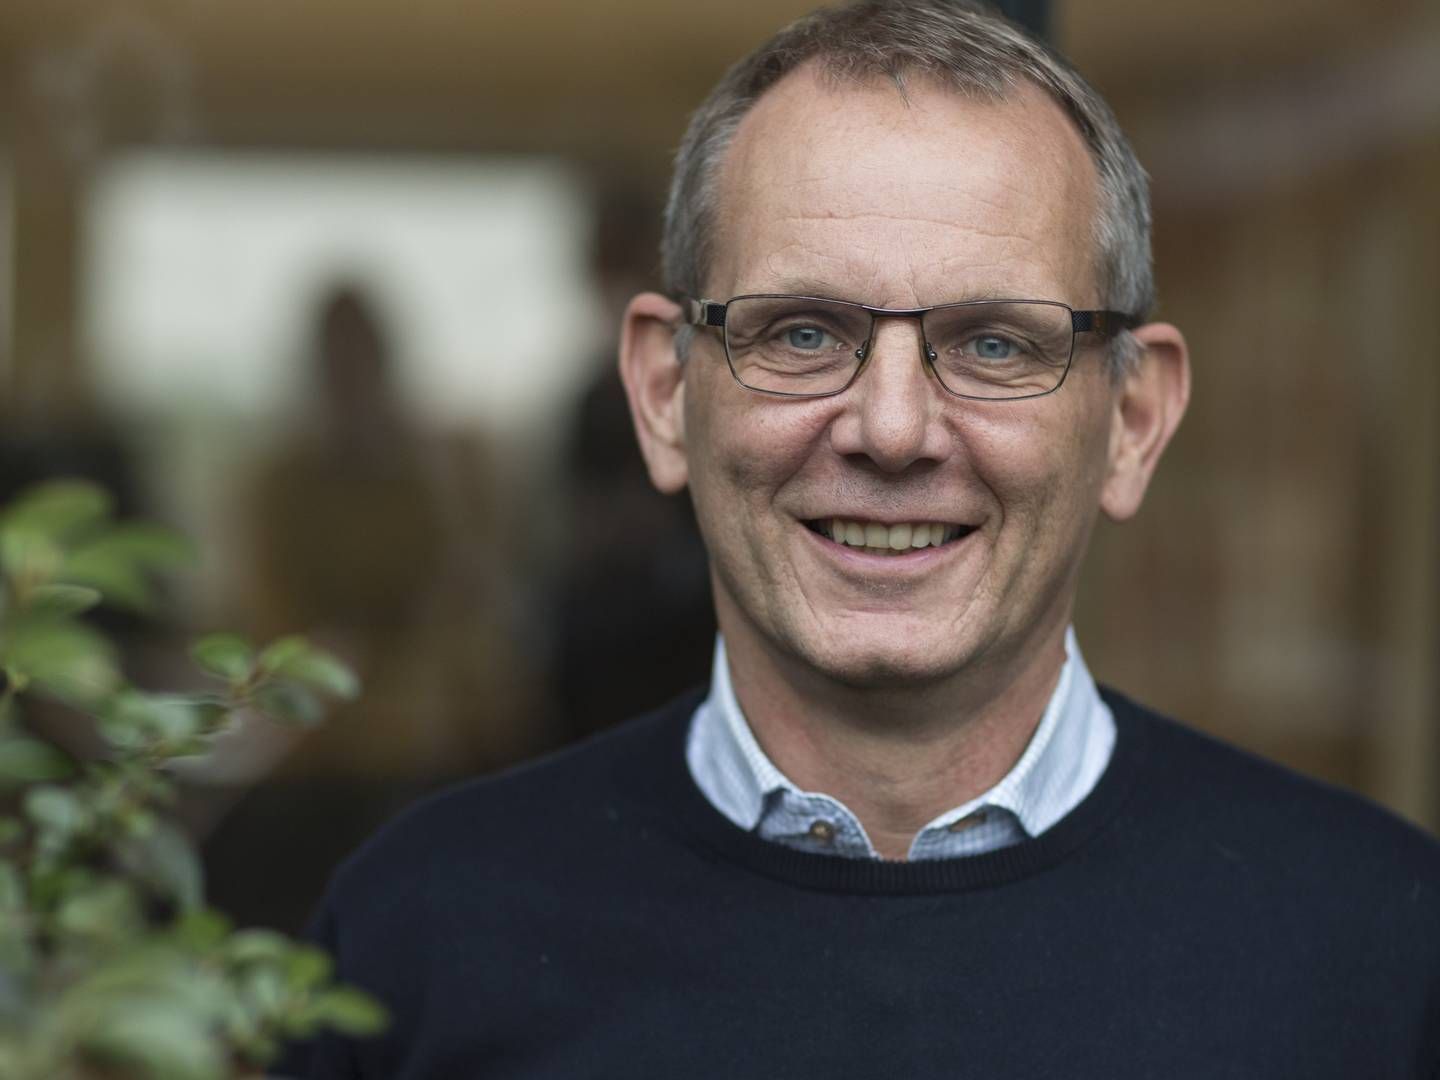 Niels Peter Ravnsborg er adm. direktør hos Agrovi, hvor han har arbejdet i mere end 25 år.